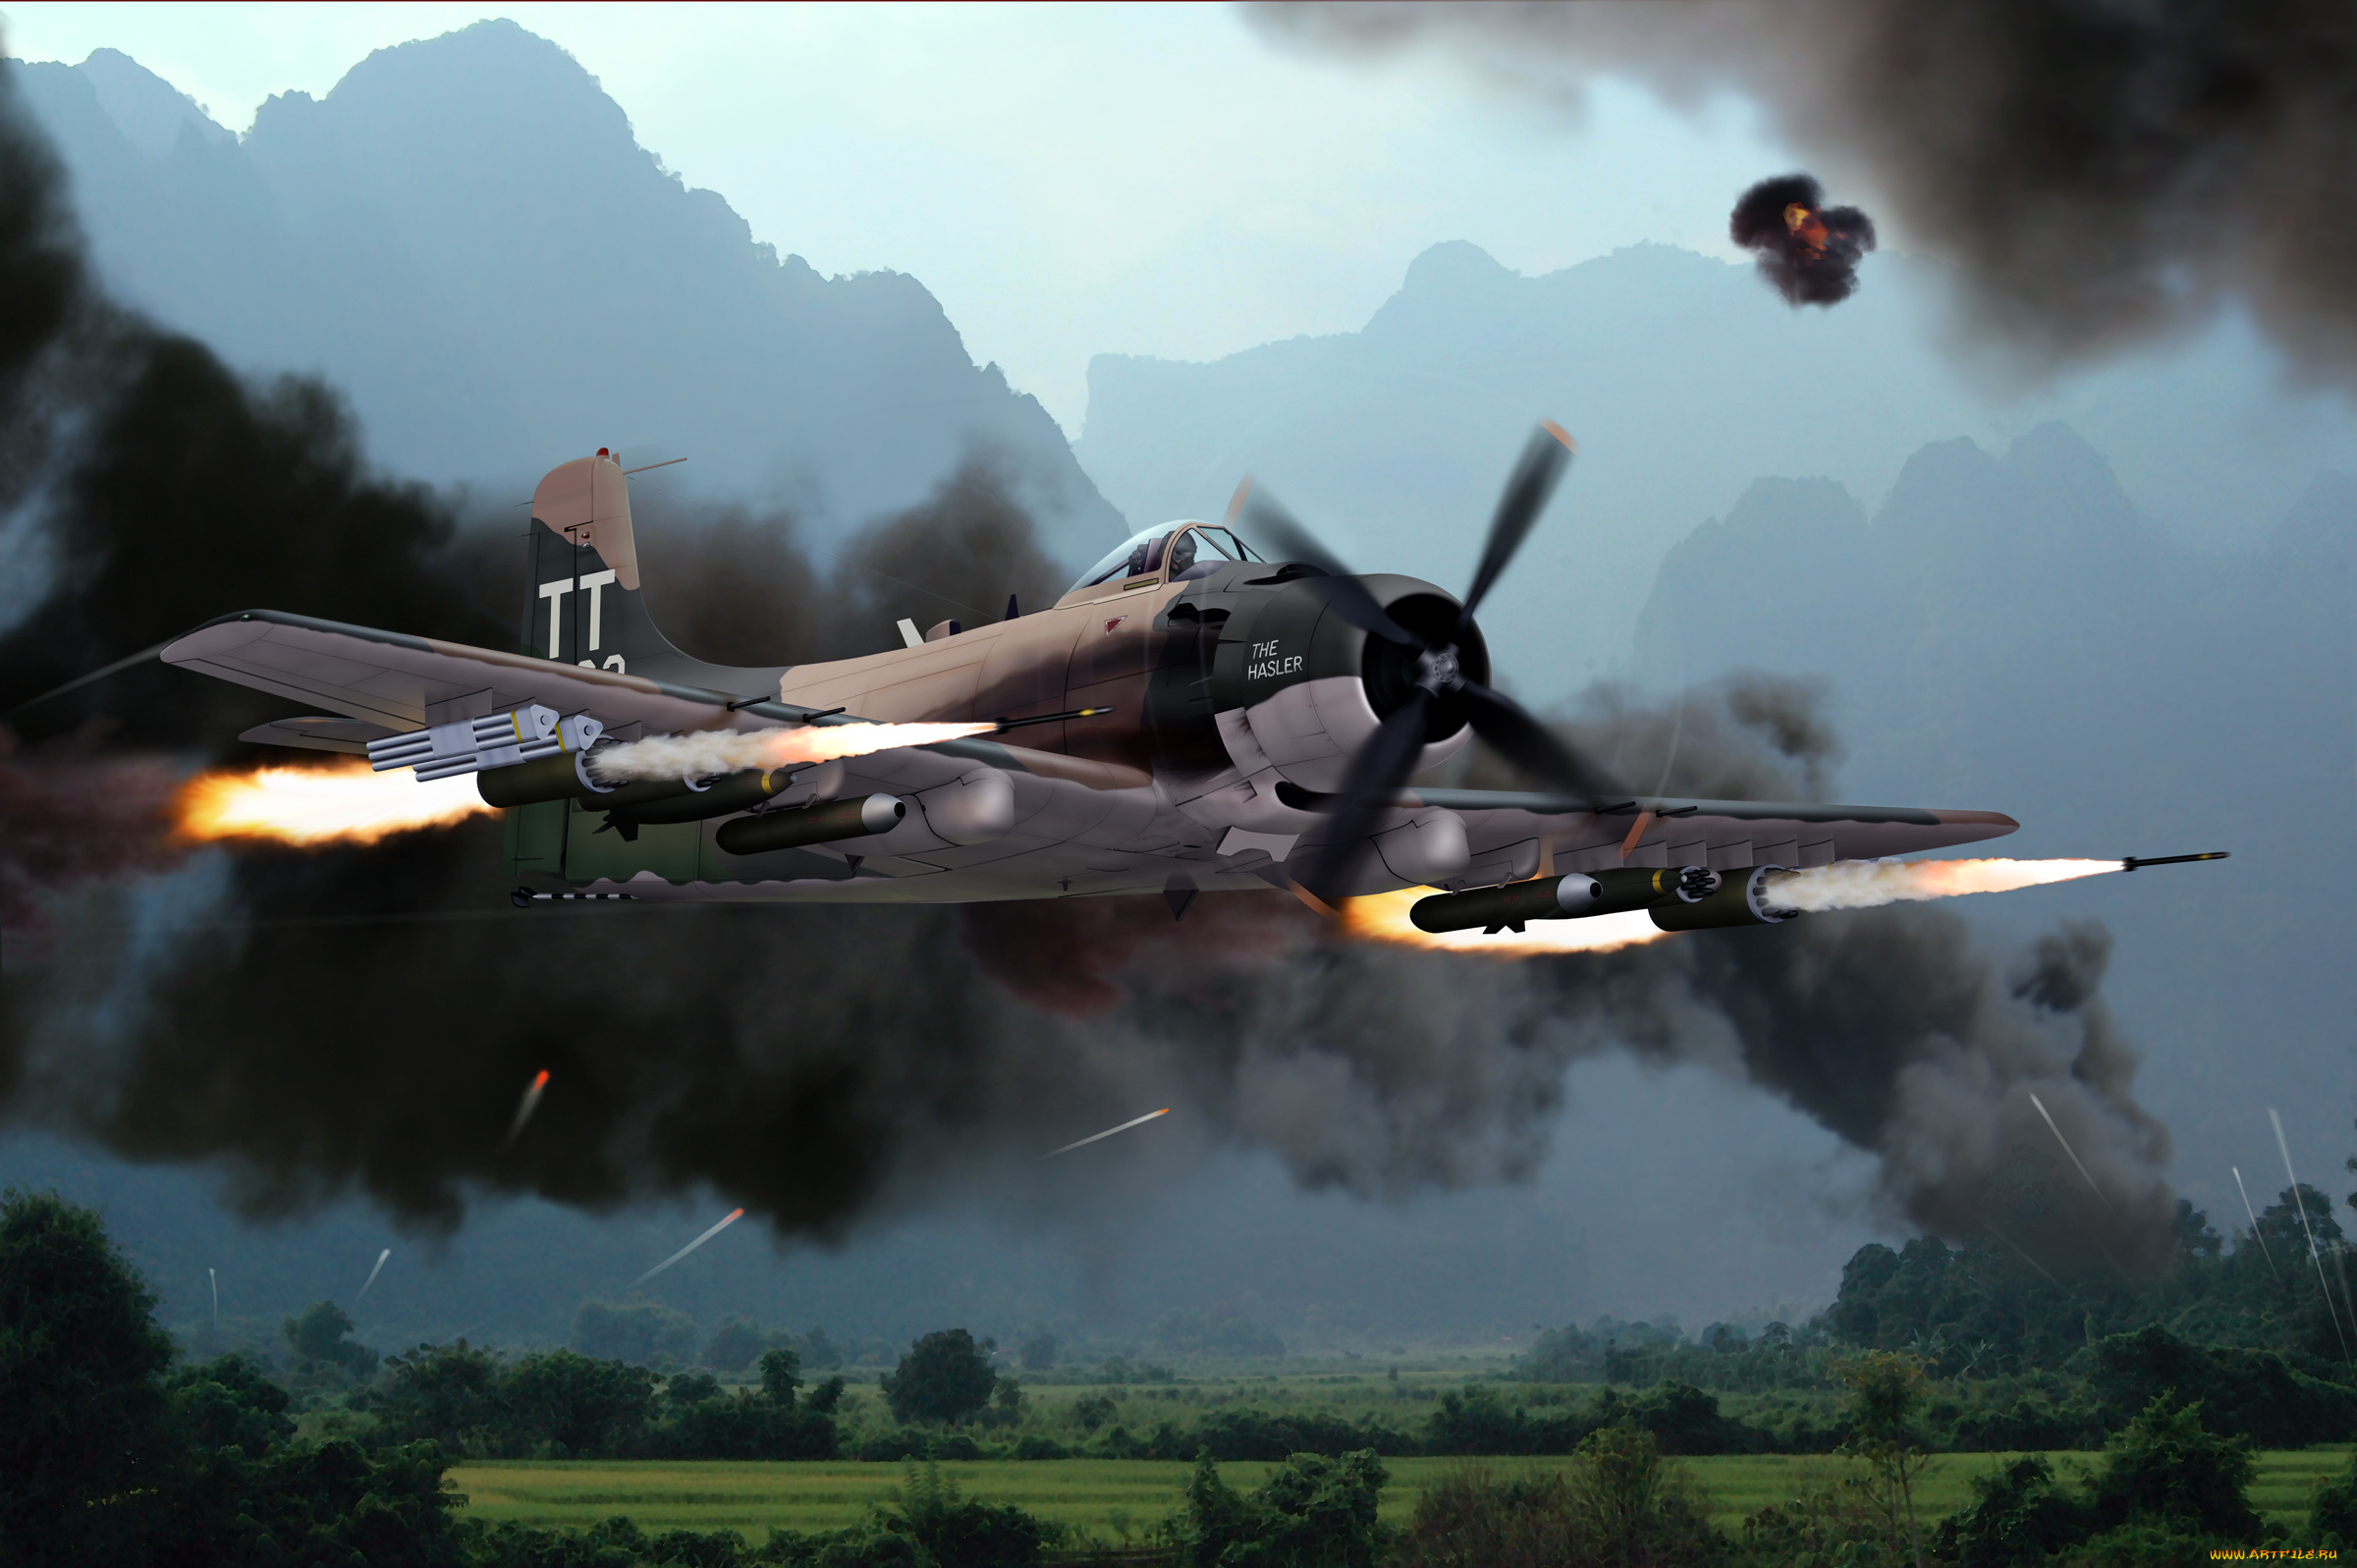 a-skyraider-1, авиация, 3д, рисованые, v-graphic, бой, воздушный